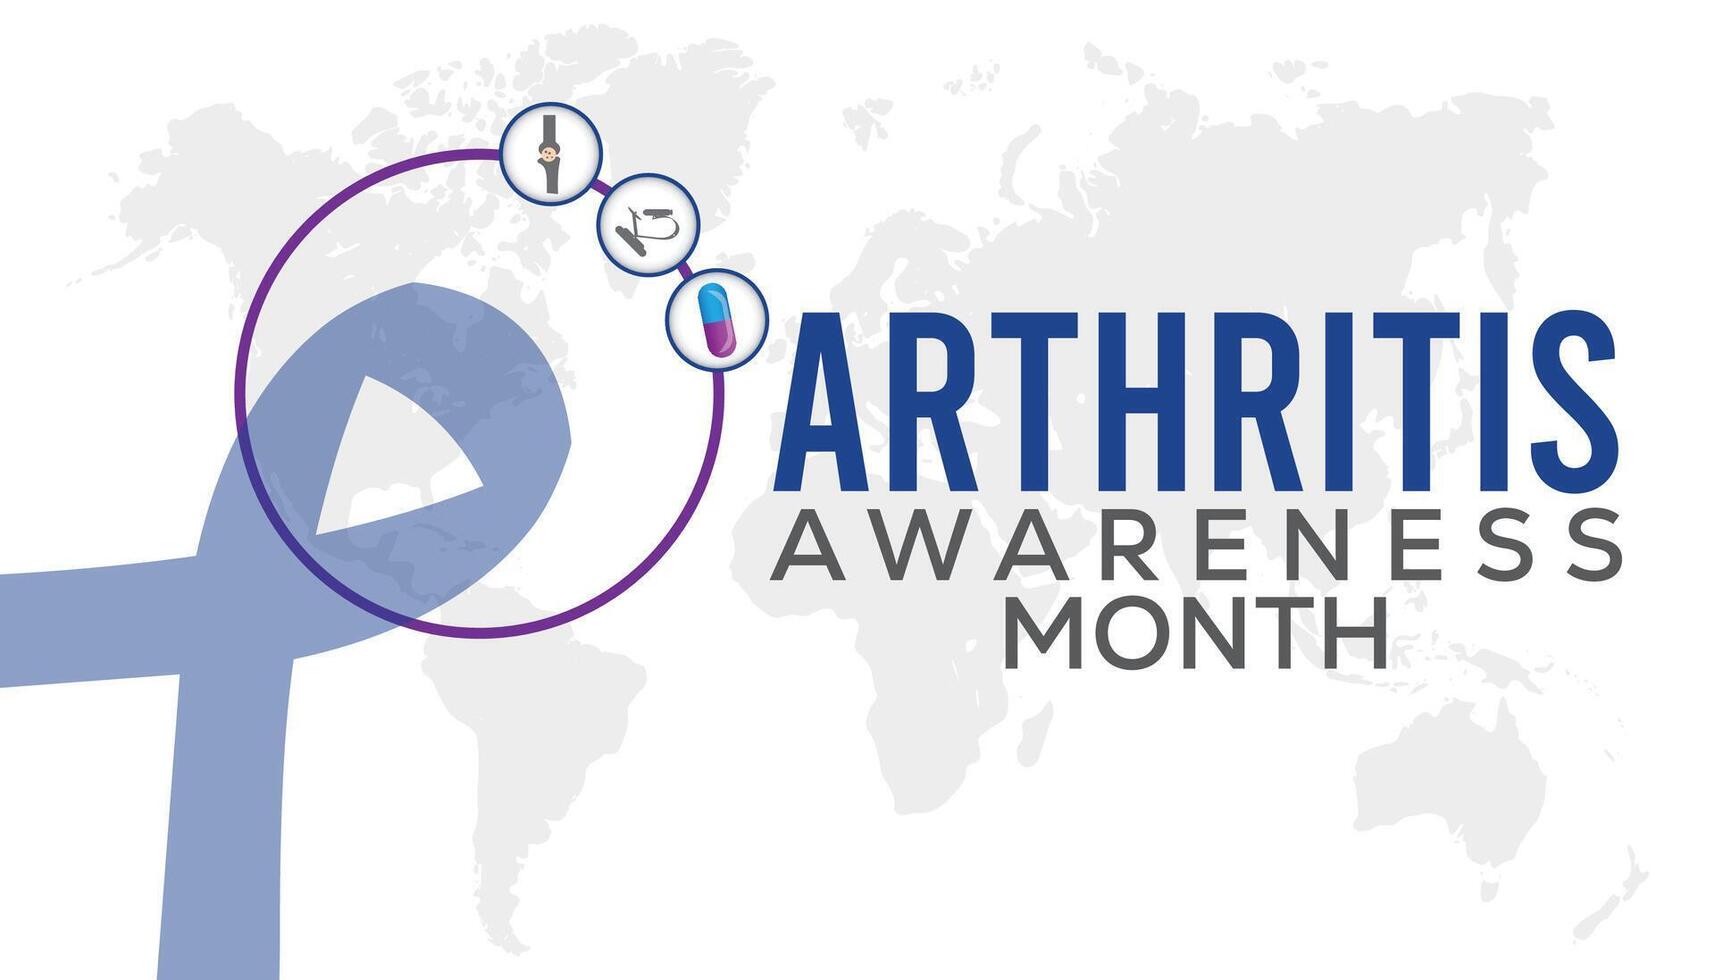 artrit medvetenhet månad observerats varje år i Maj. mall för bakgrund, baner, kort, affisch med text inskrift. vektor